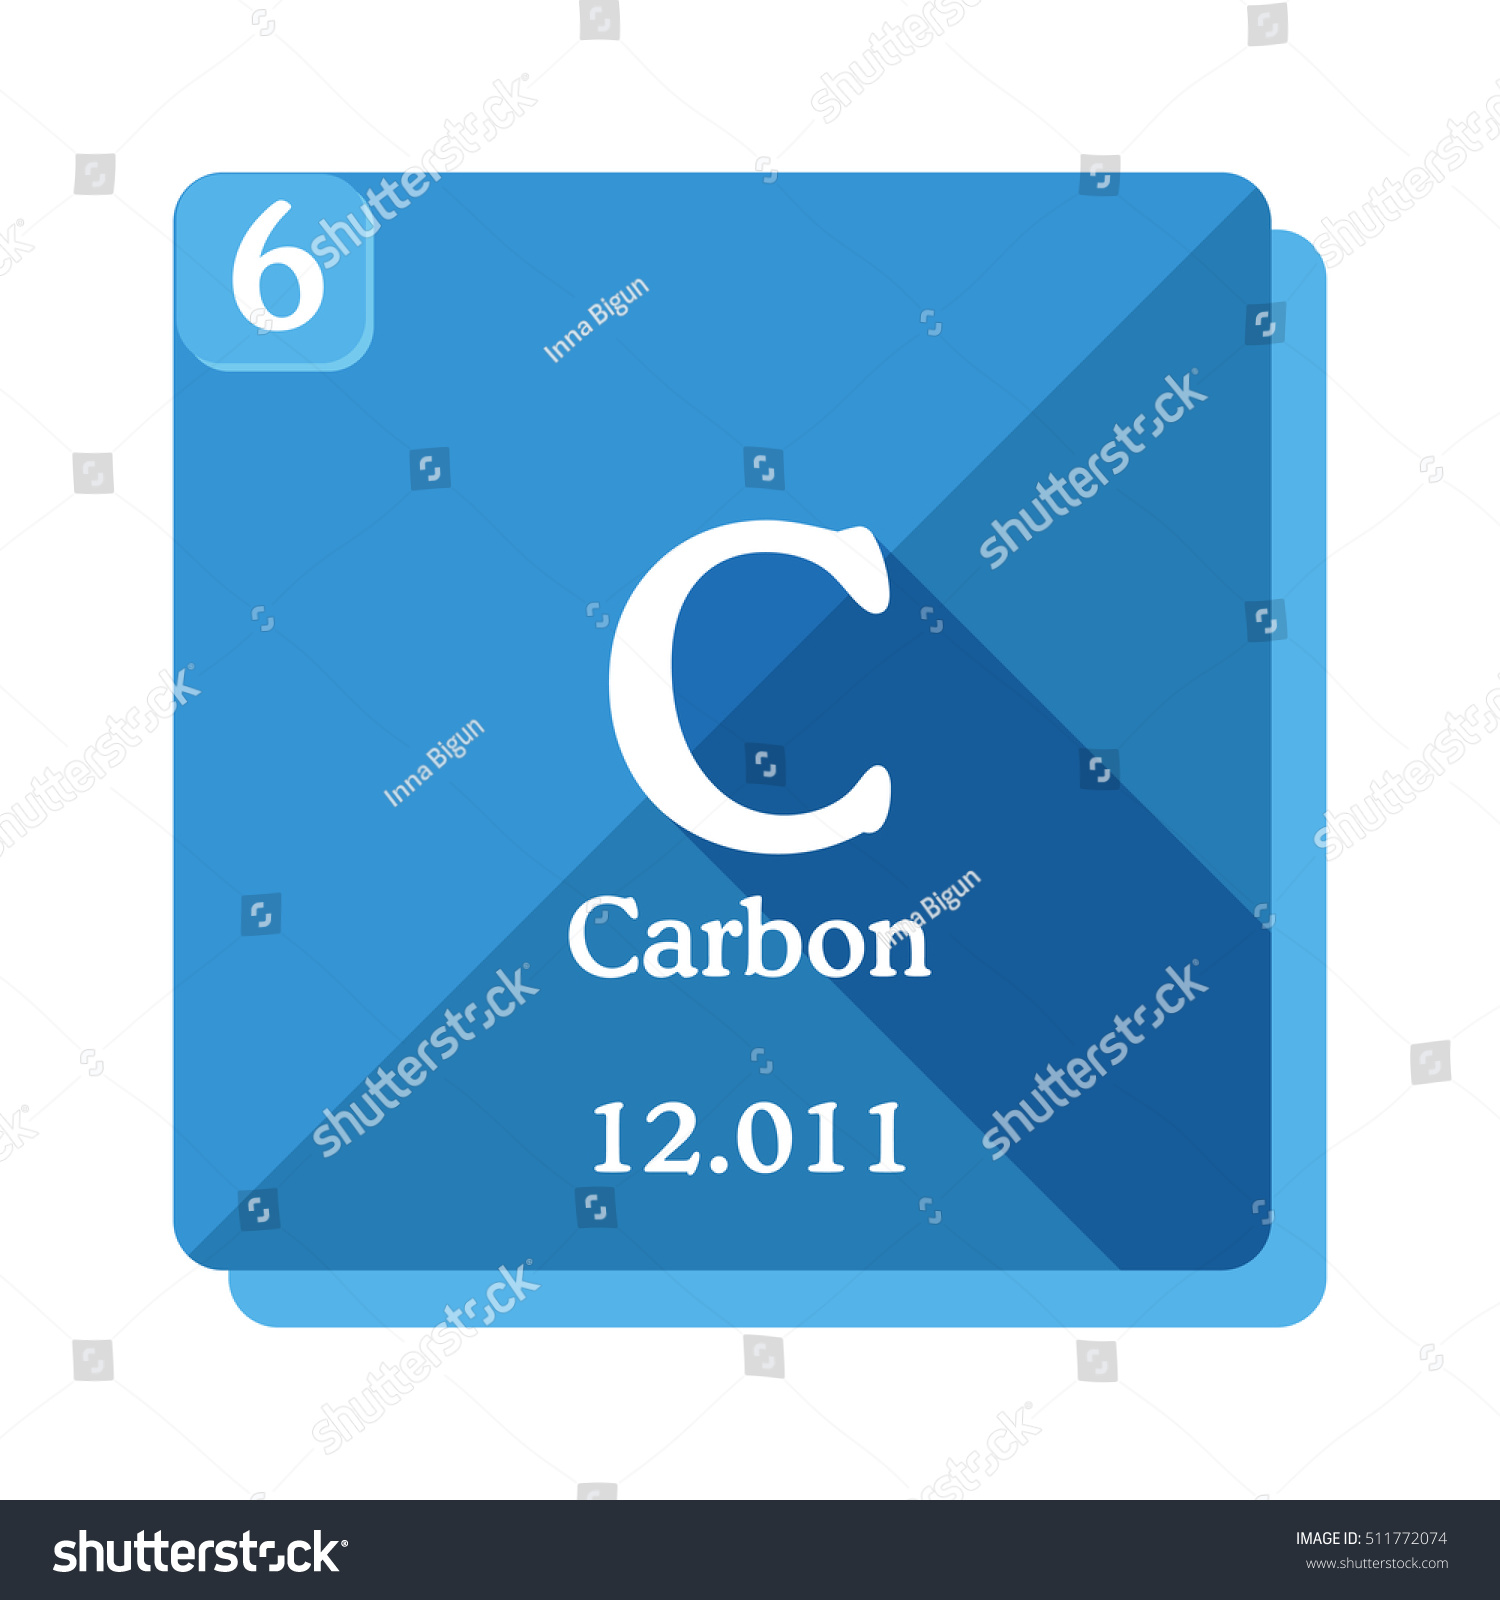 Descubra Carbon C Element Periodic Table Vector Imgenes De Stock En Hd Y Millones De Otras Fotos